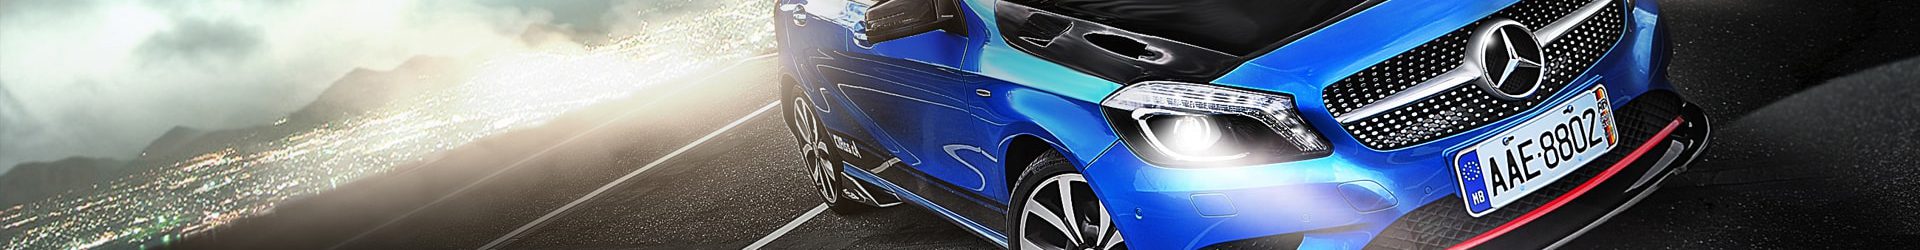 –持續進化– BMW E92 M3 Coupe 開箱拍攝